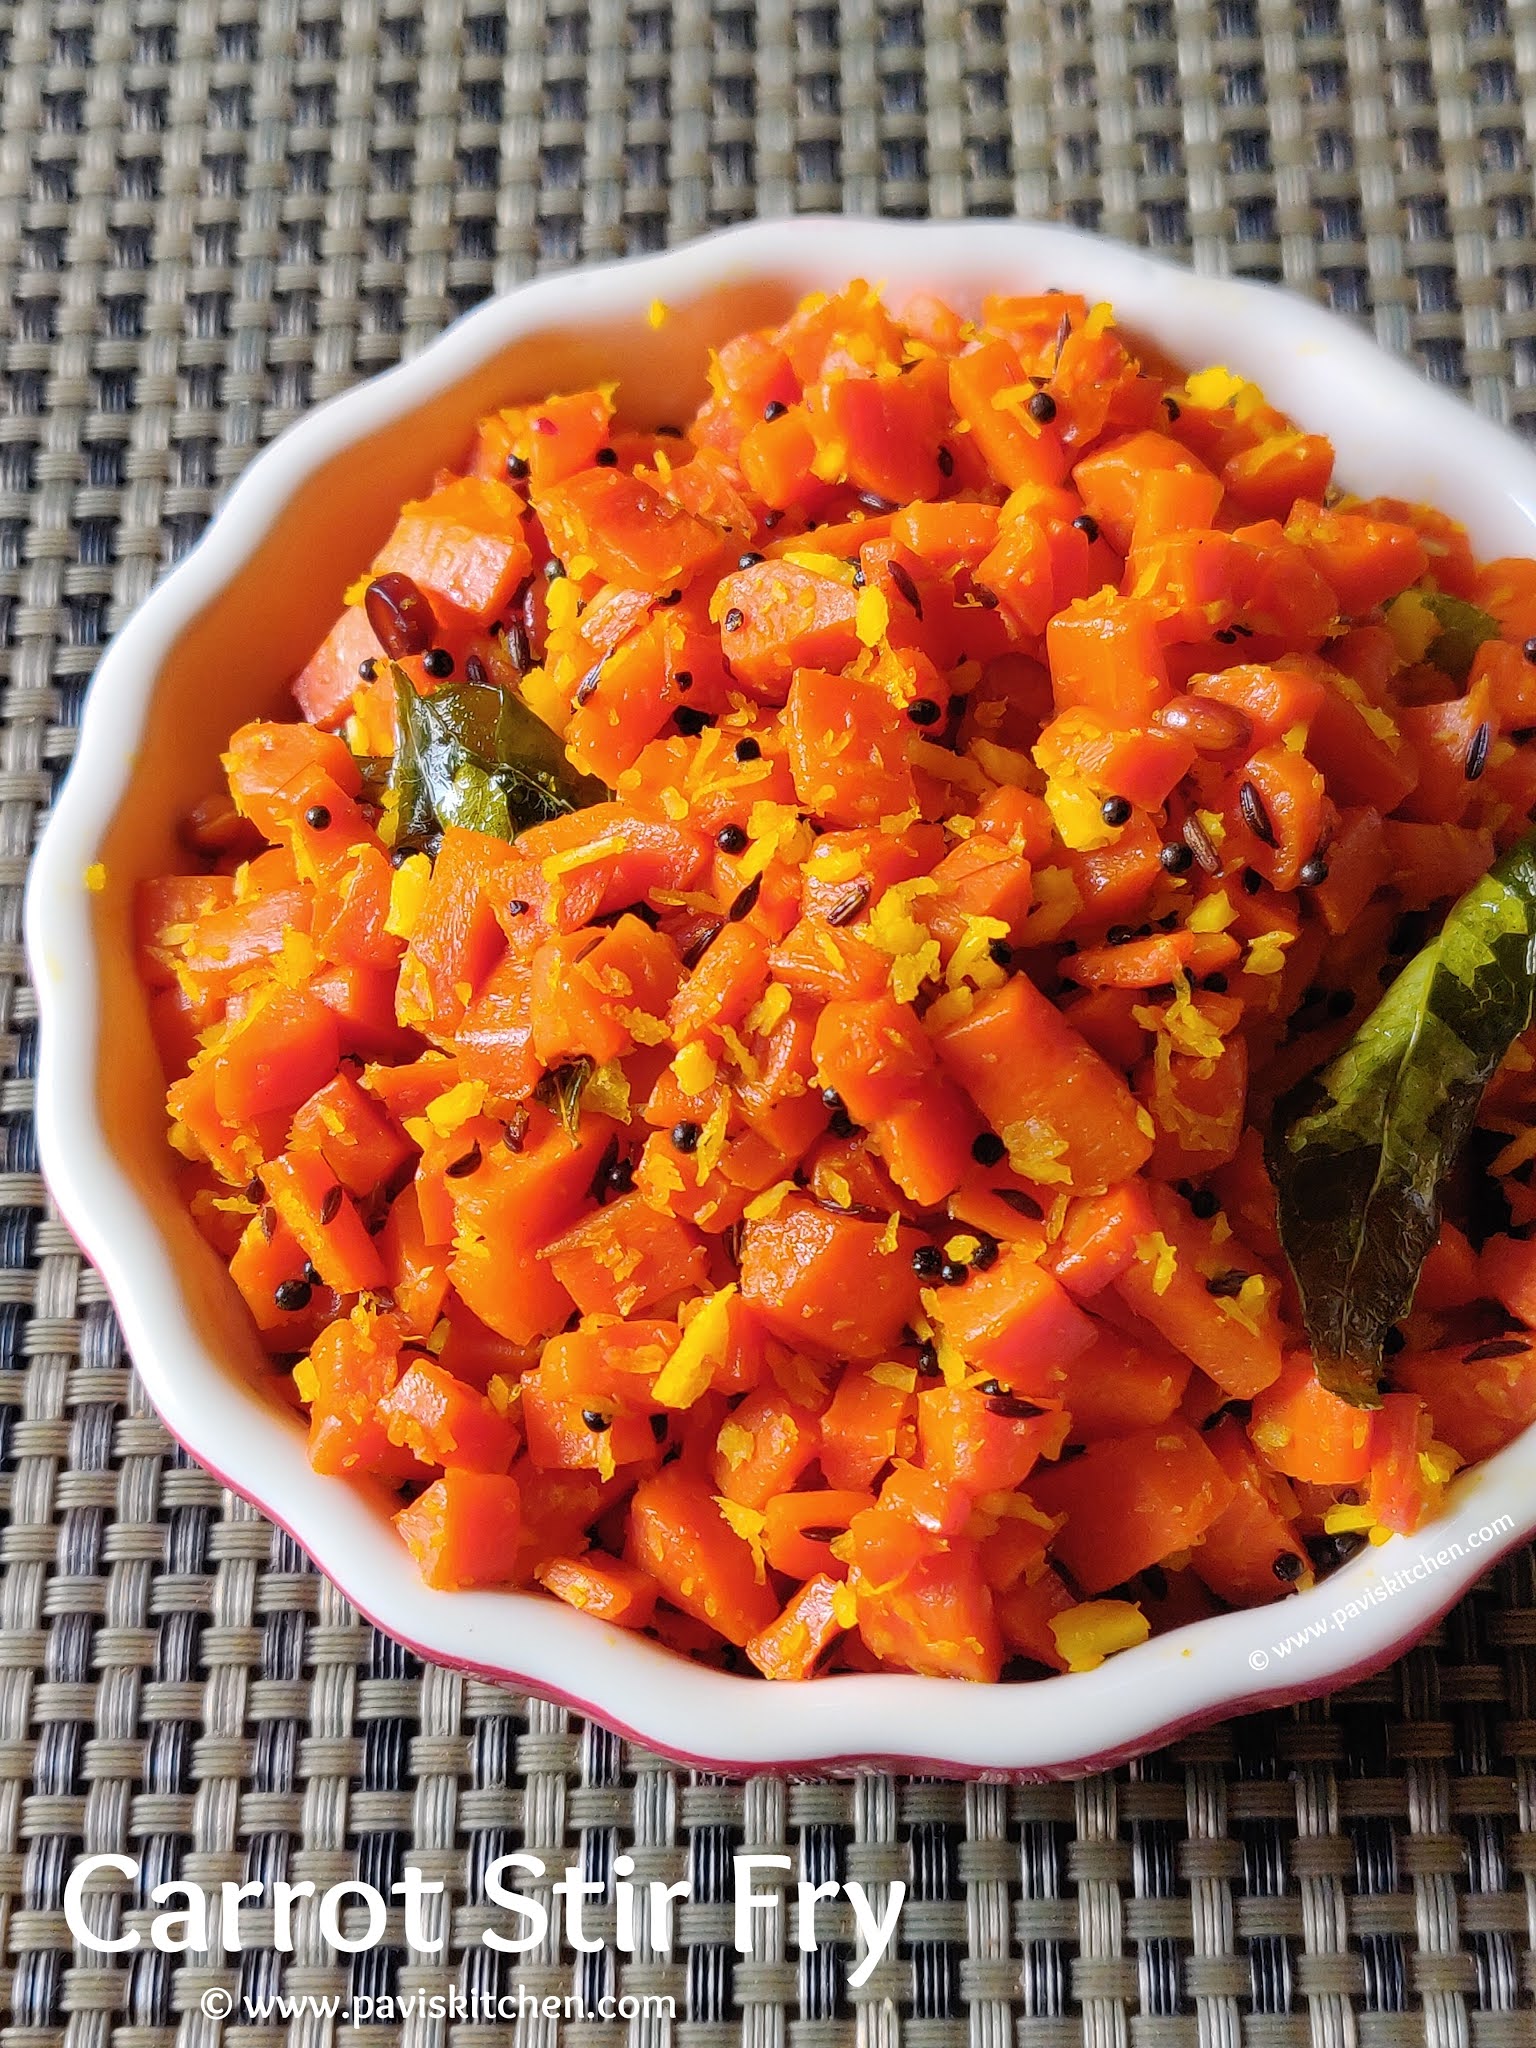 Carrot Poriyal Recipe | Carrot Palya | Carrot Stir Fry